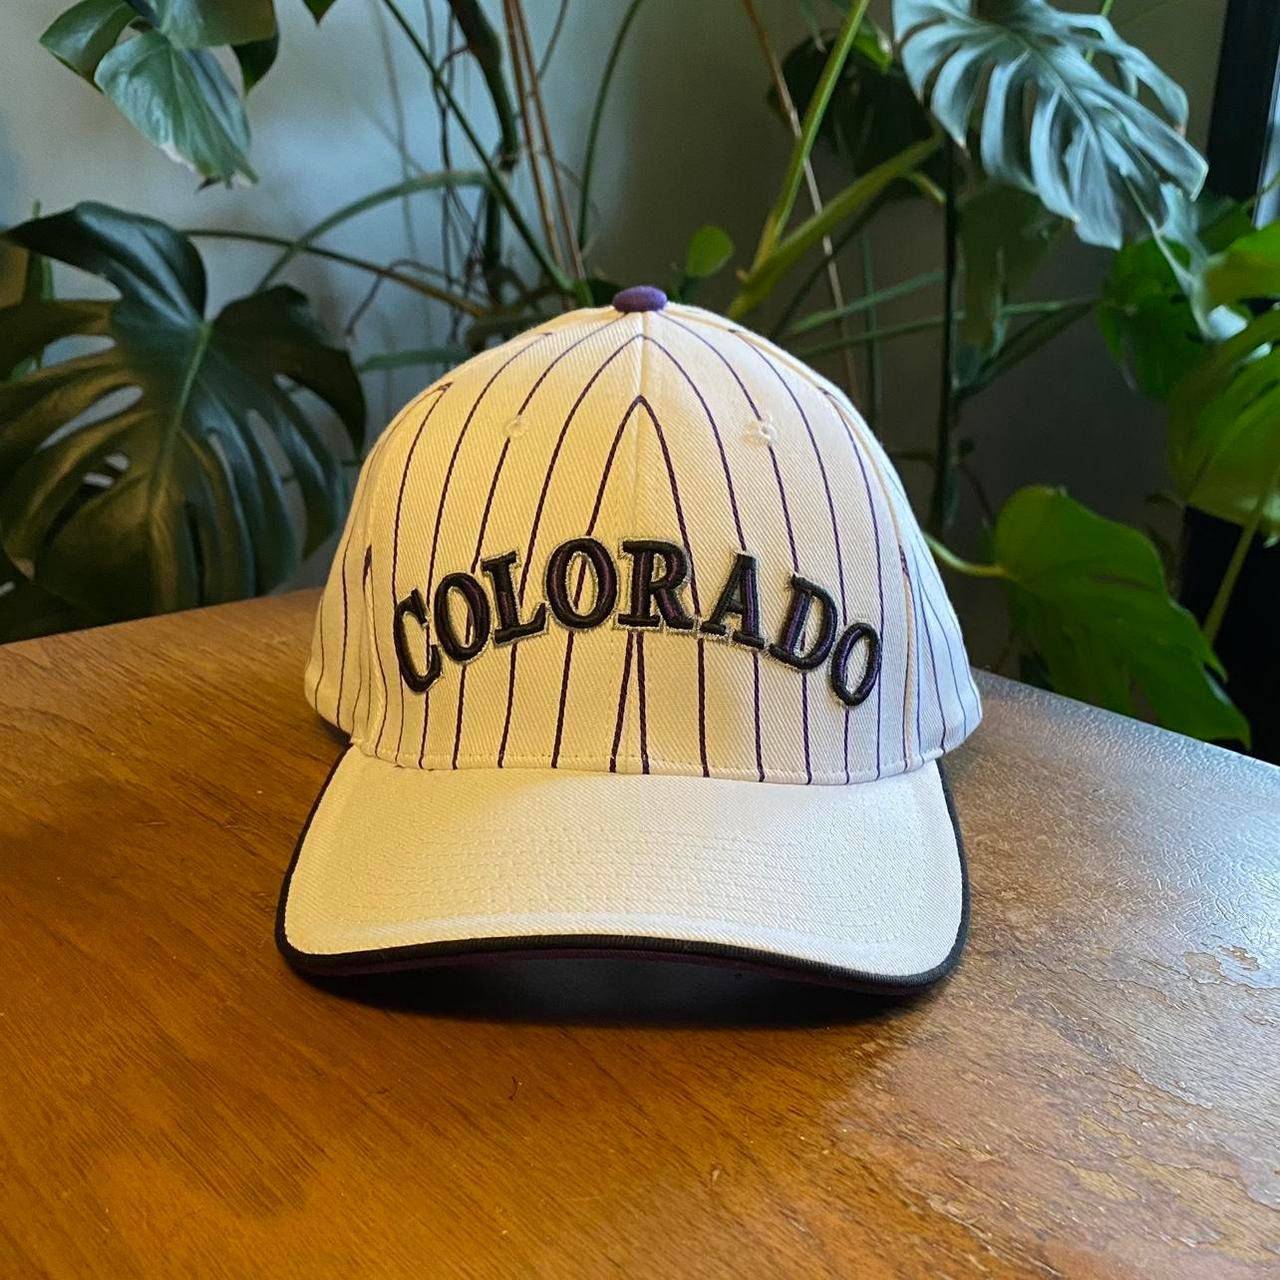 Colorado Avalanche Reverse Retro Hat, Quebec Nordiques Hat, Colorado  Rockies Hat